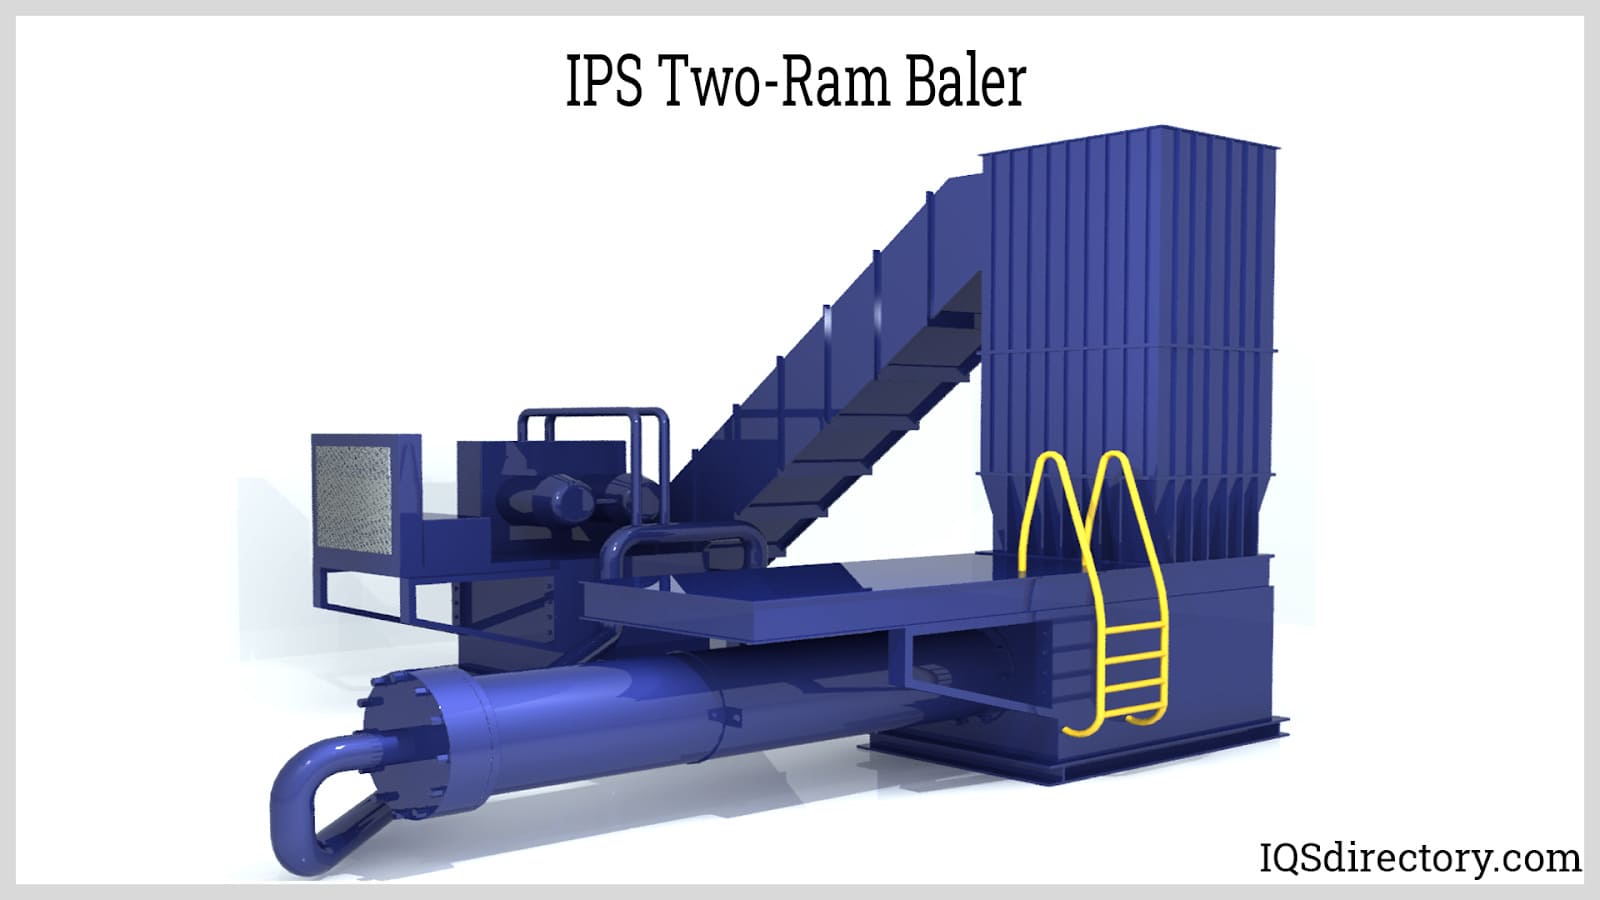 IPS Two-Ram Baler